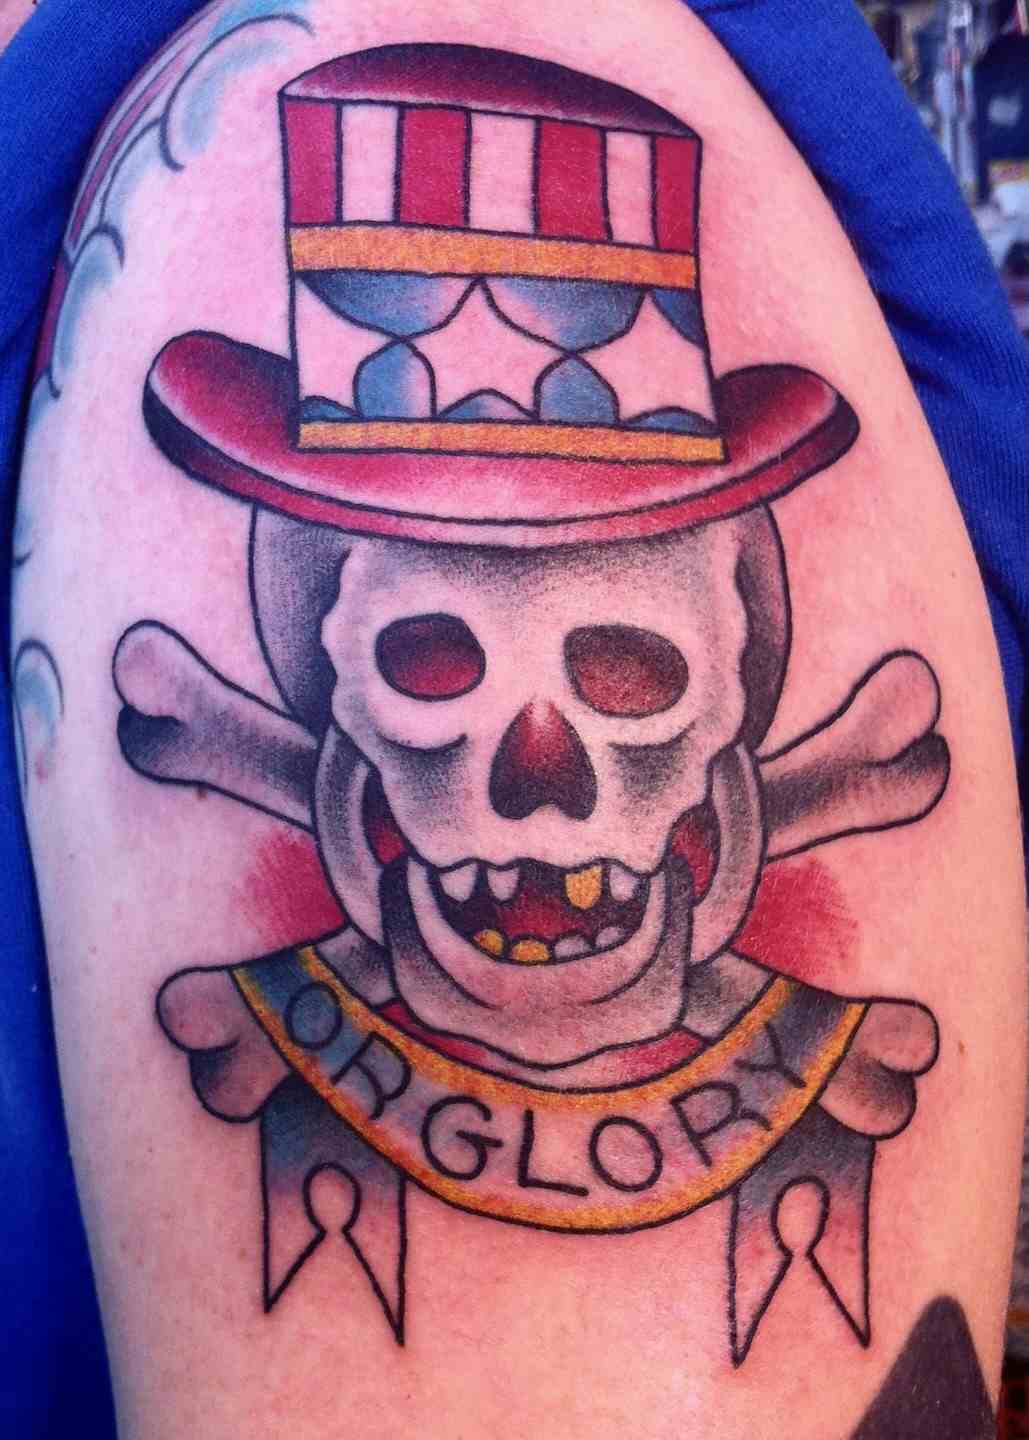 Liberty skull tattoo